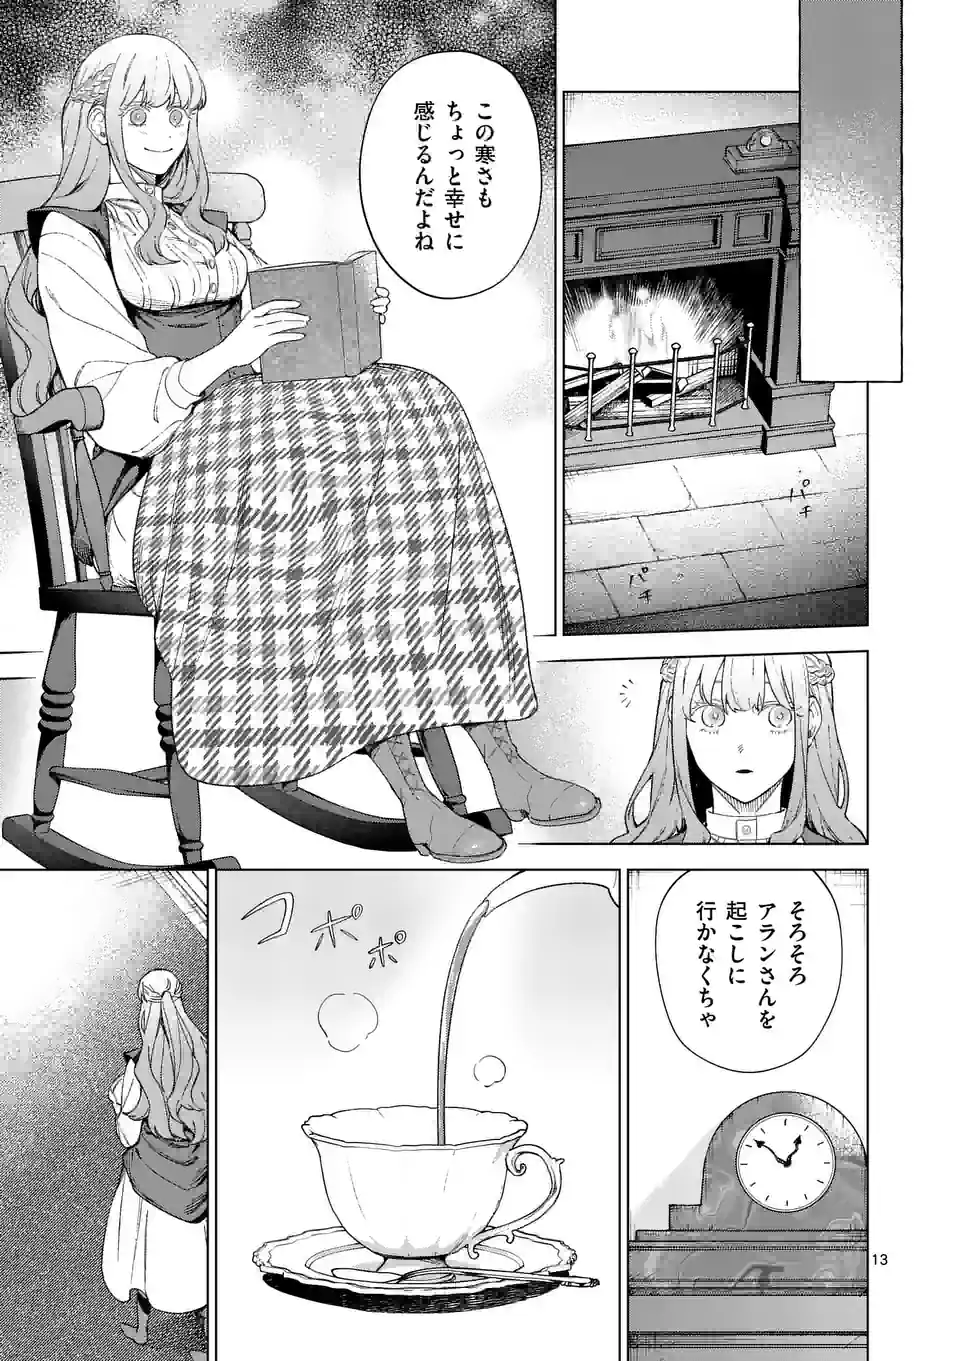 Mou Kyoumi ga Nai to Rikonsareta Reijou no Igai to Tanoshii Shinseikatsu - Chapter 9.2 - Page 1